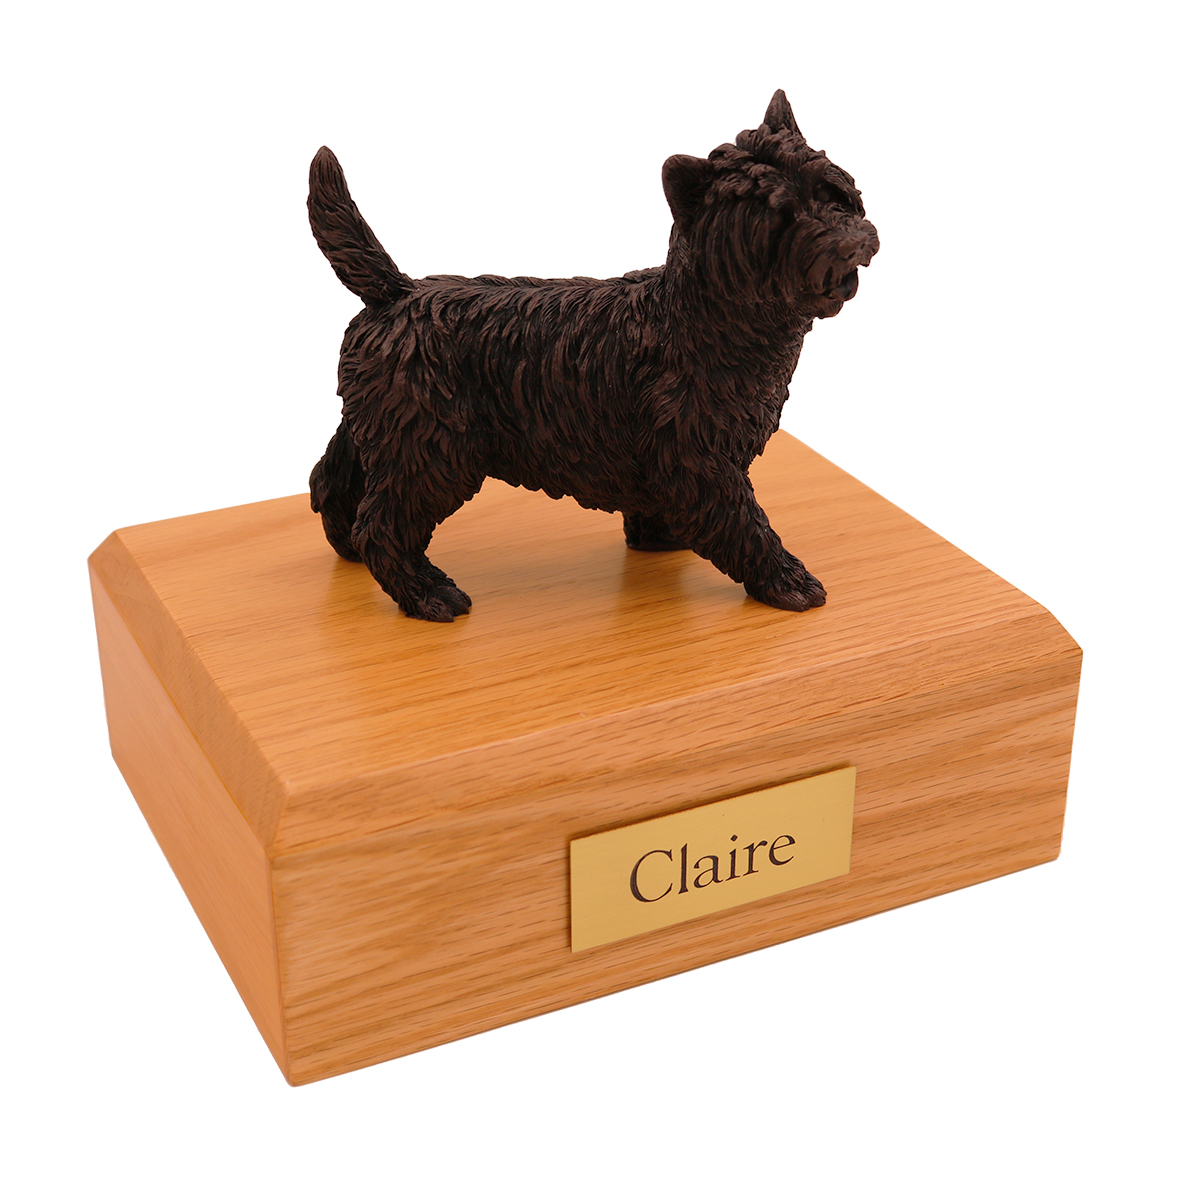 Dog, Cairn Terrier, Bonze - Figurine Urn